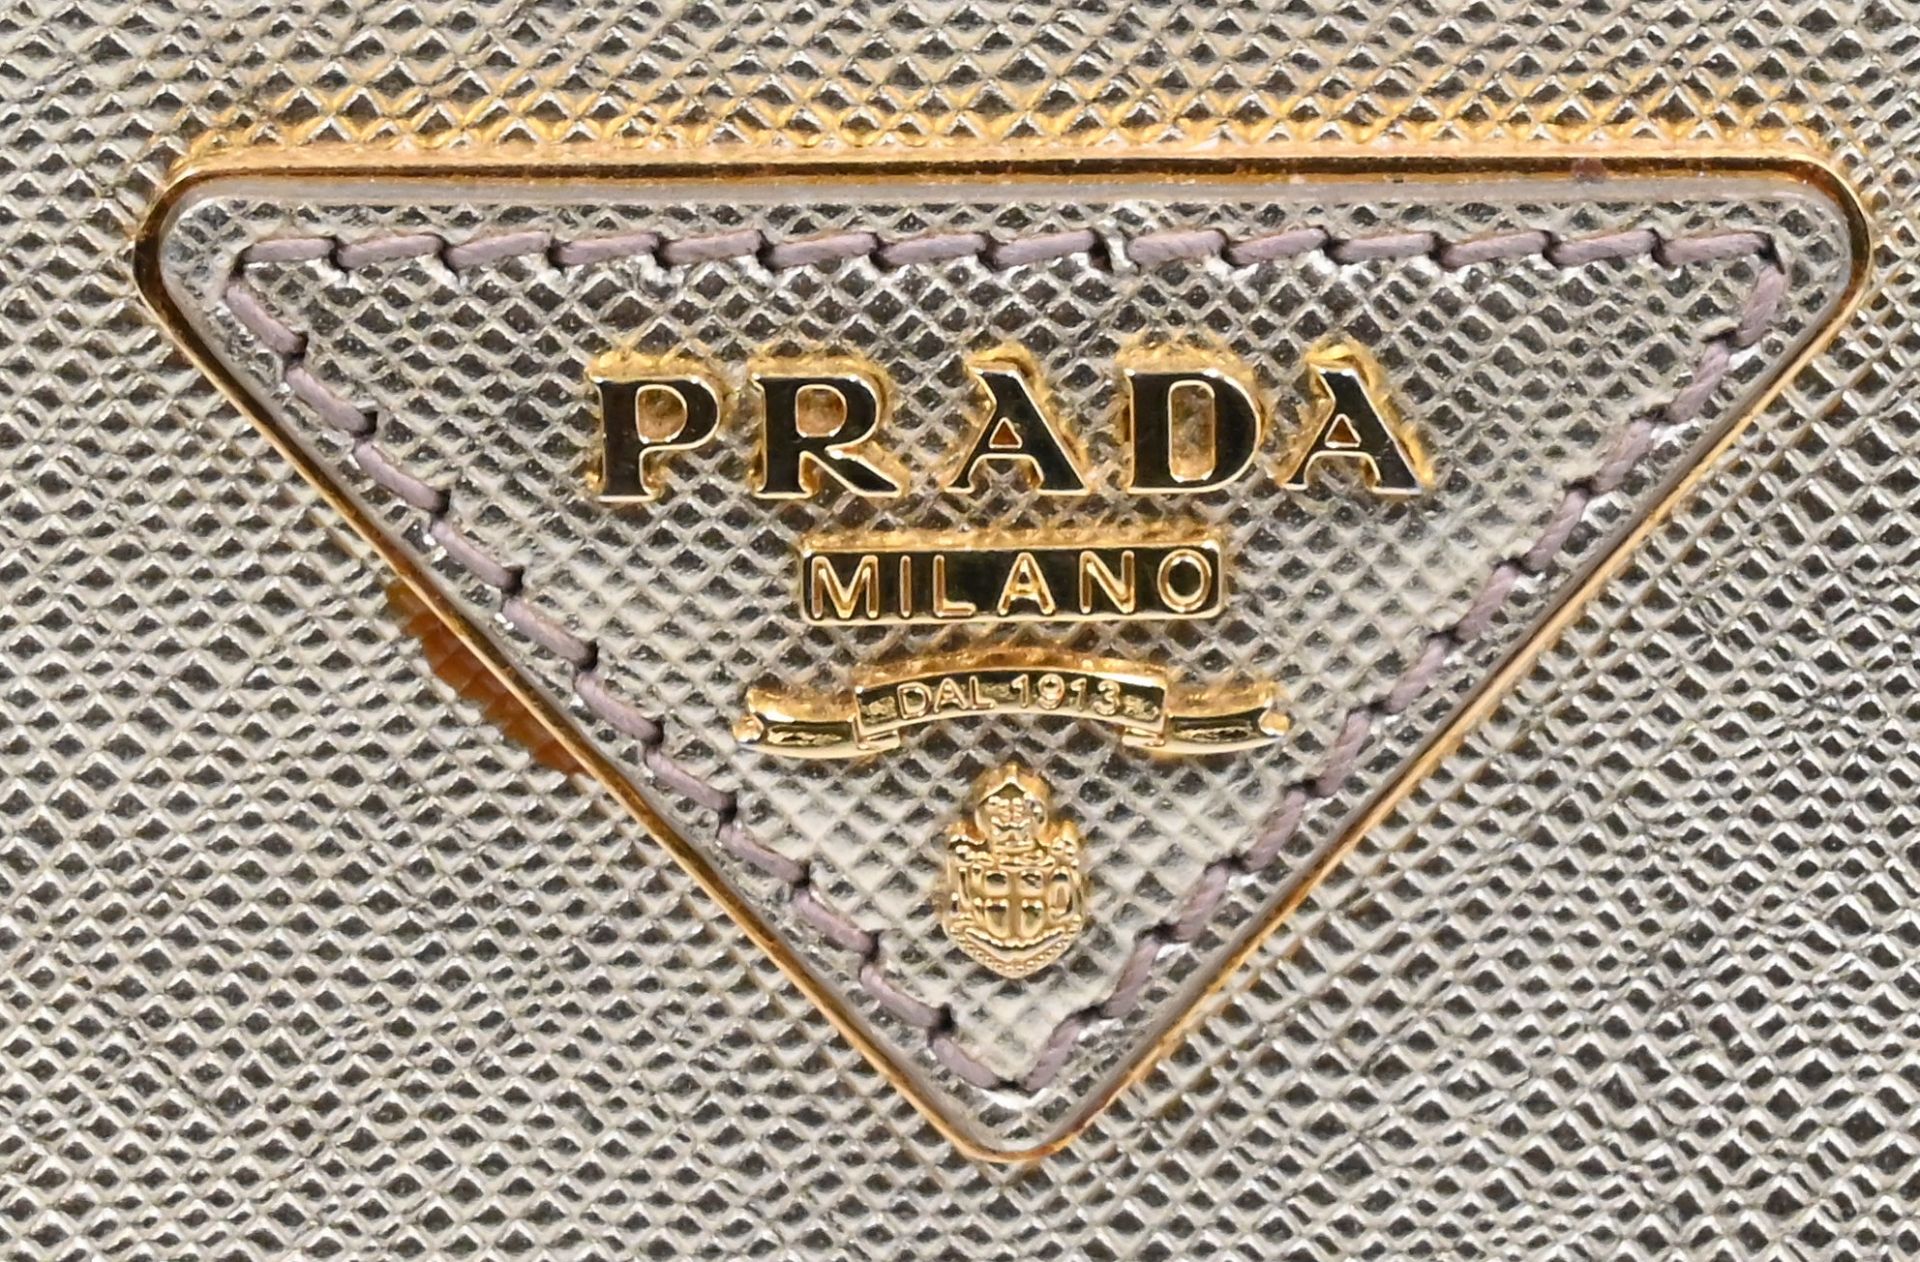 1 Handtasche PRADA, lt. Karte gekauft 2015: Saffianoleder, Farbe Platino, Schulterriemen, Staubbeute - Image 2 of 3